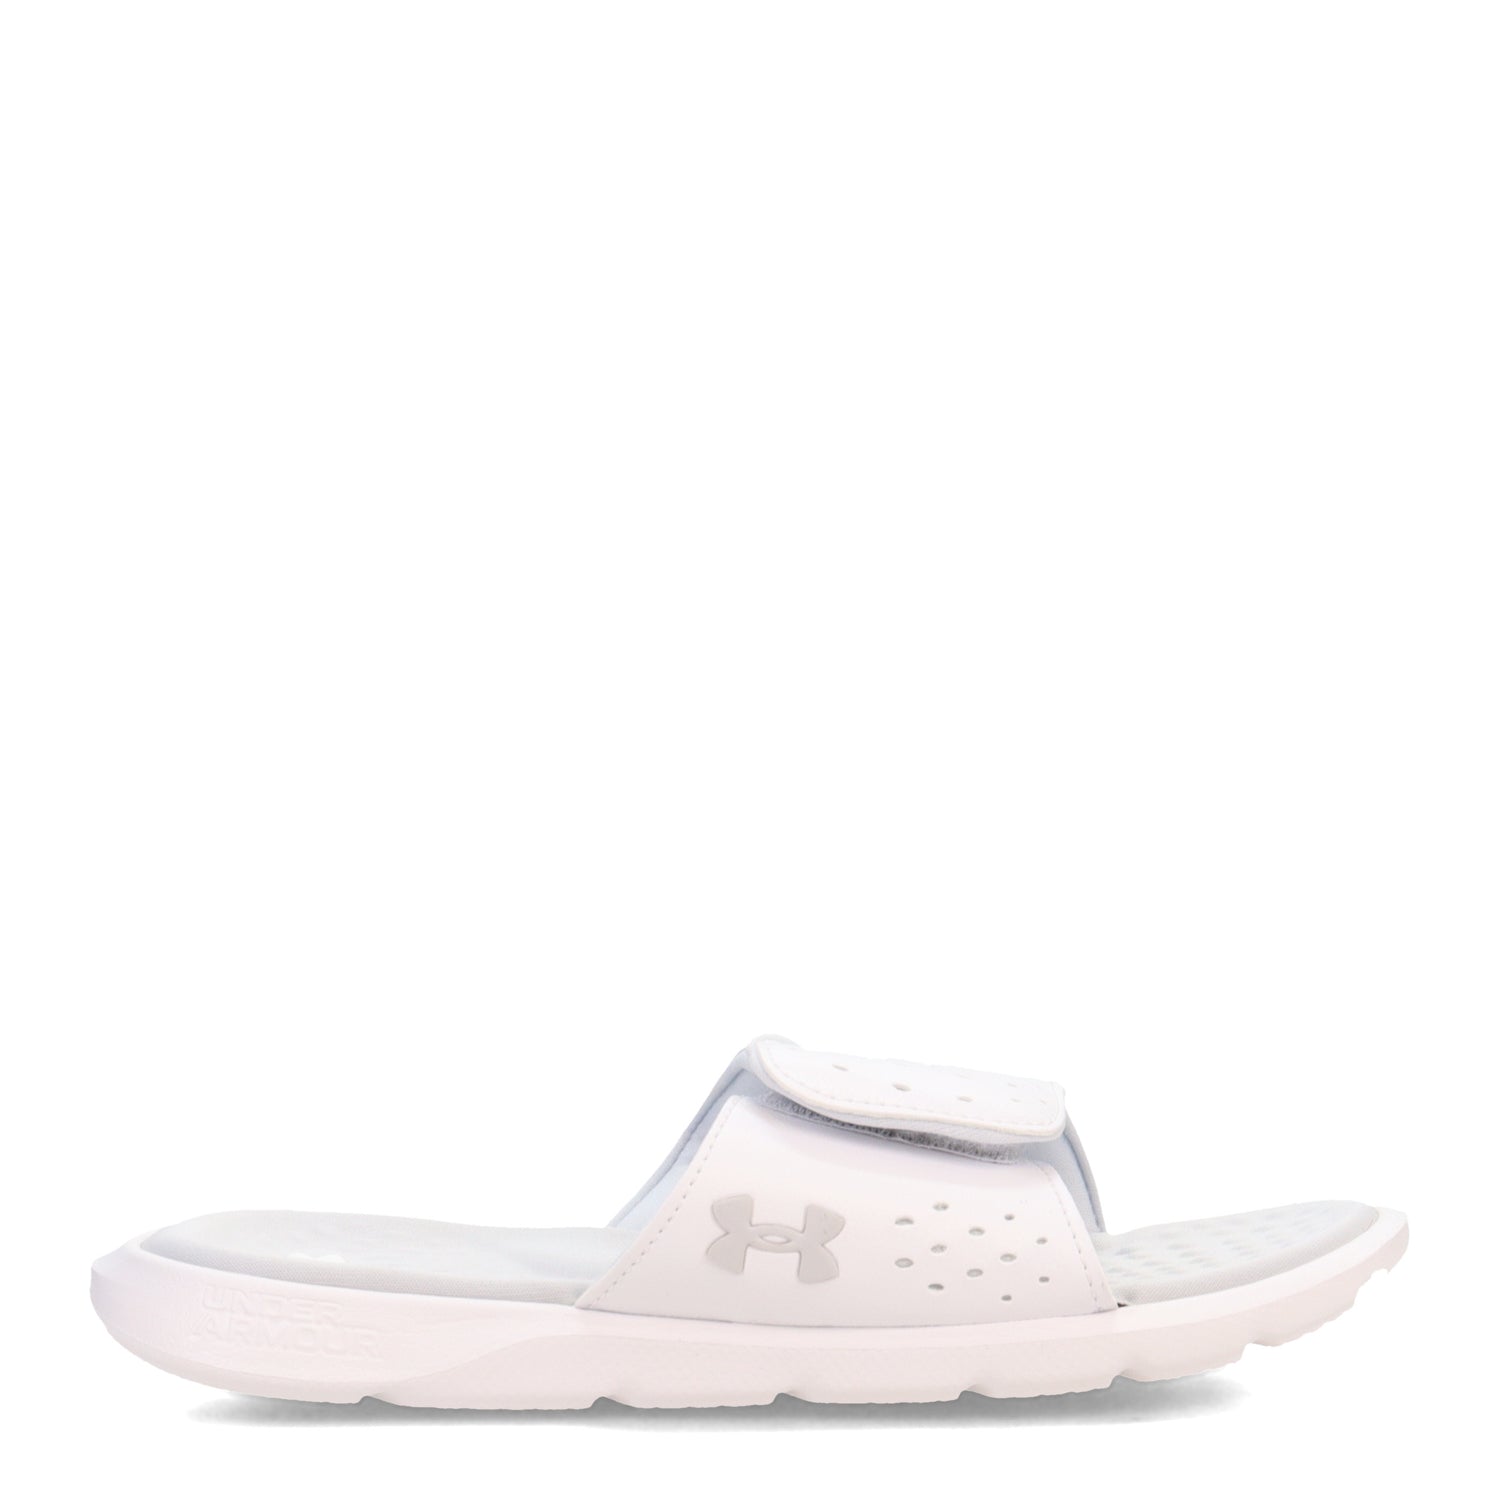 Peltz Shoes  Women's Under Armour Ignite 7 Slide Sandal WHITE/ WHITE/ HALO GRAY 3026027-100